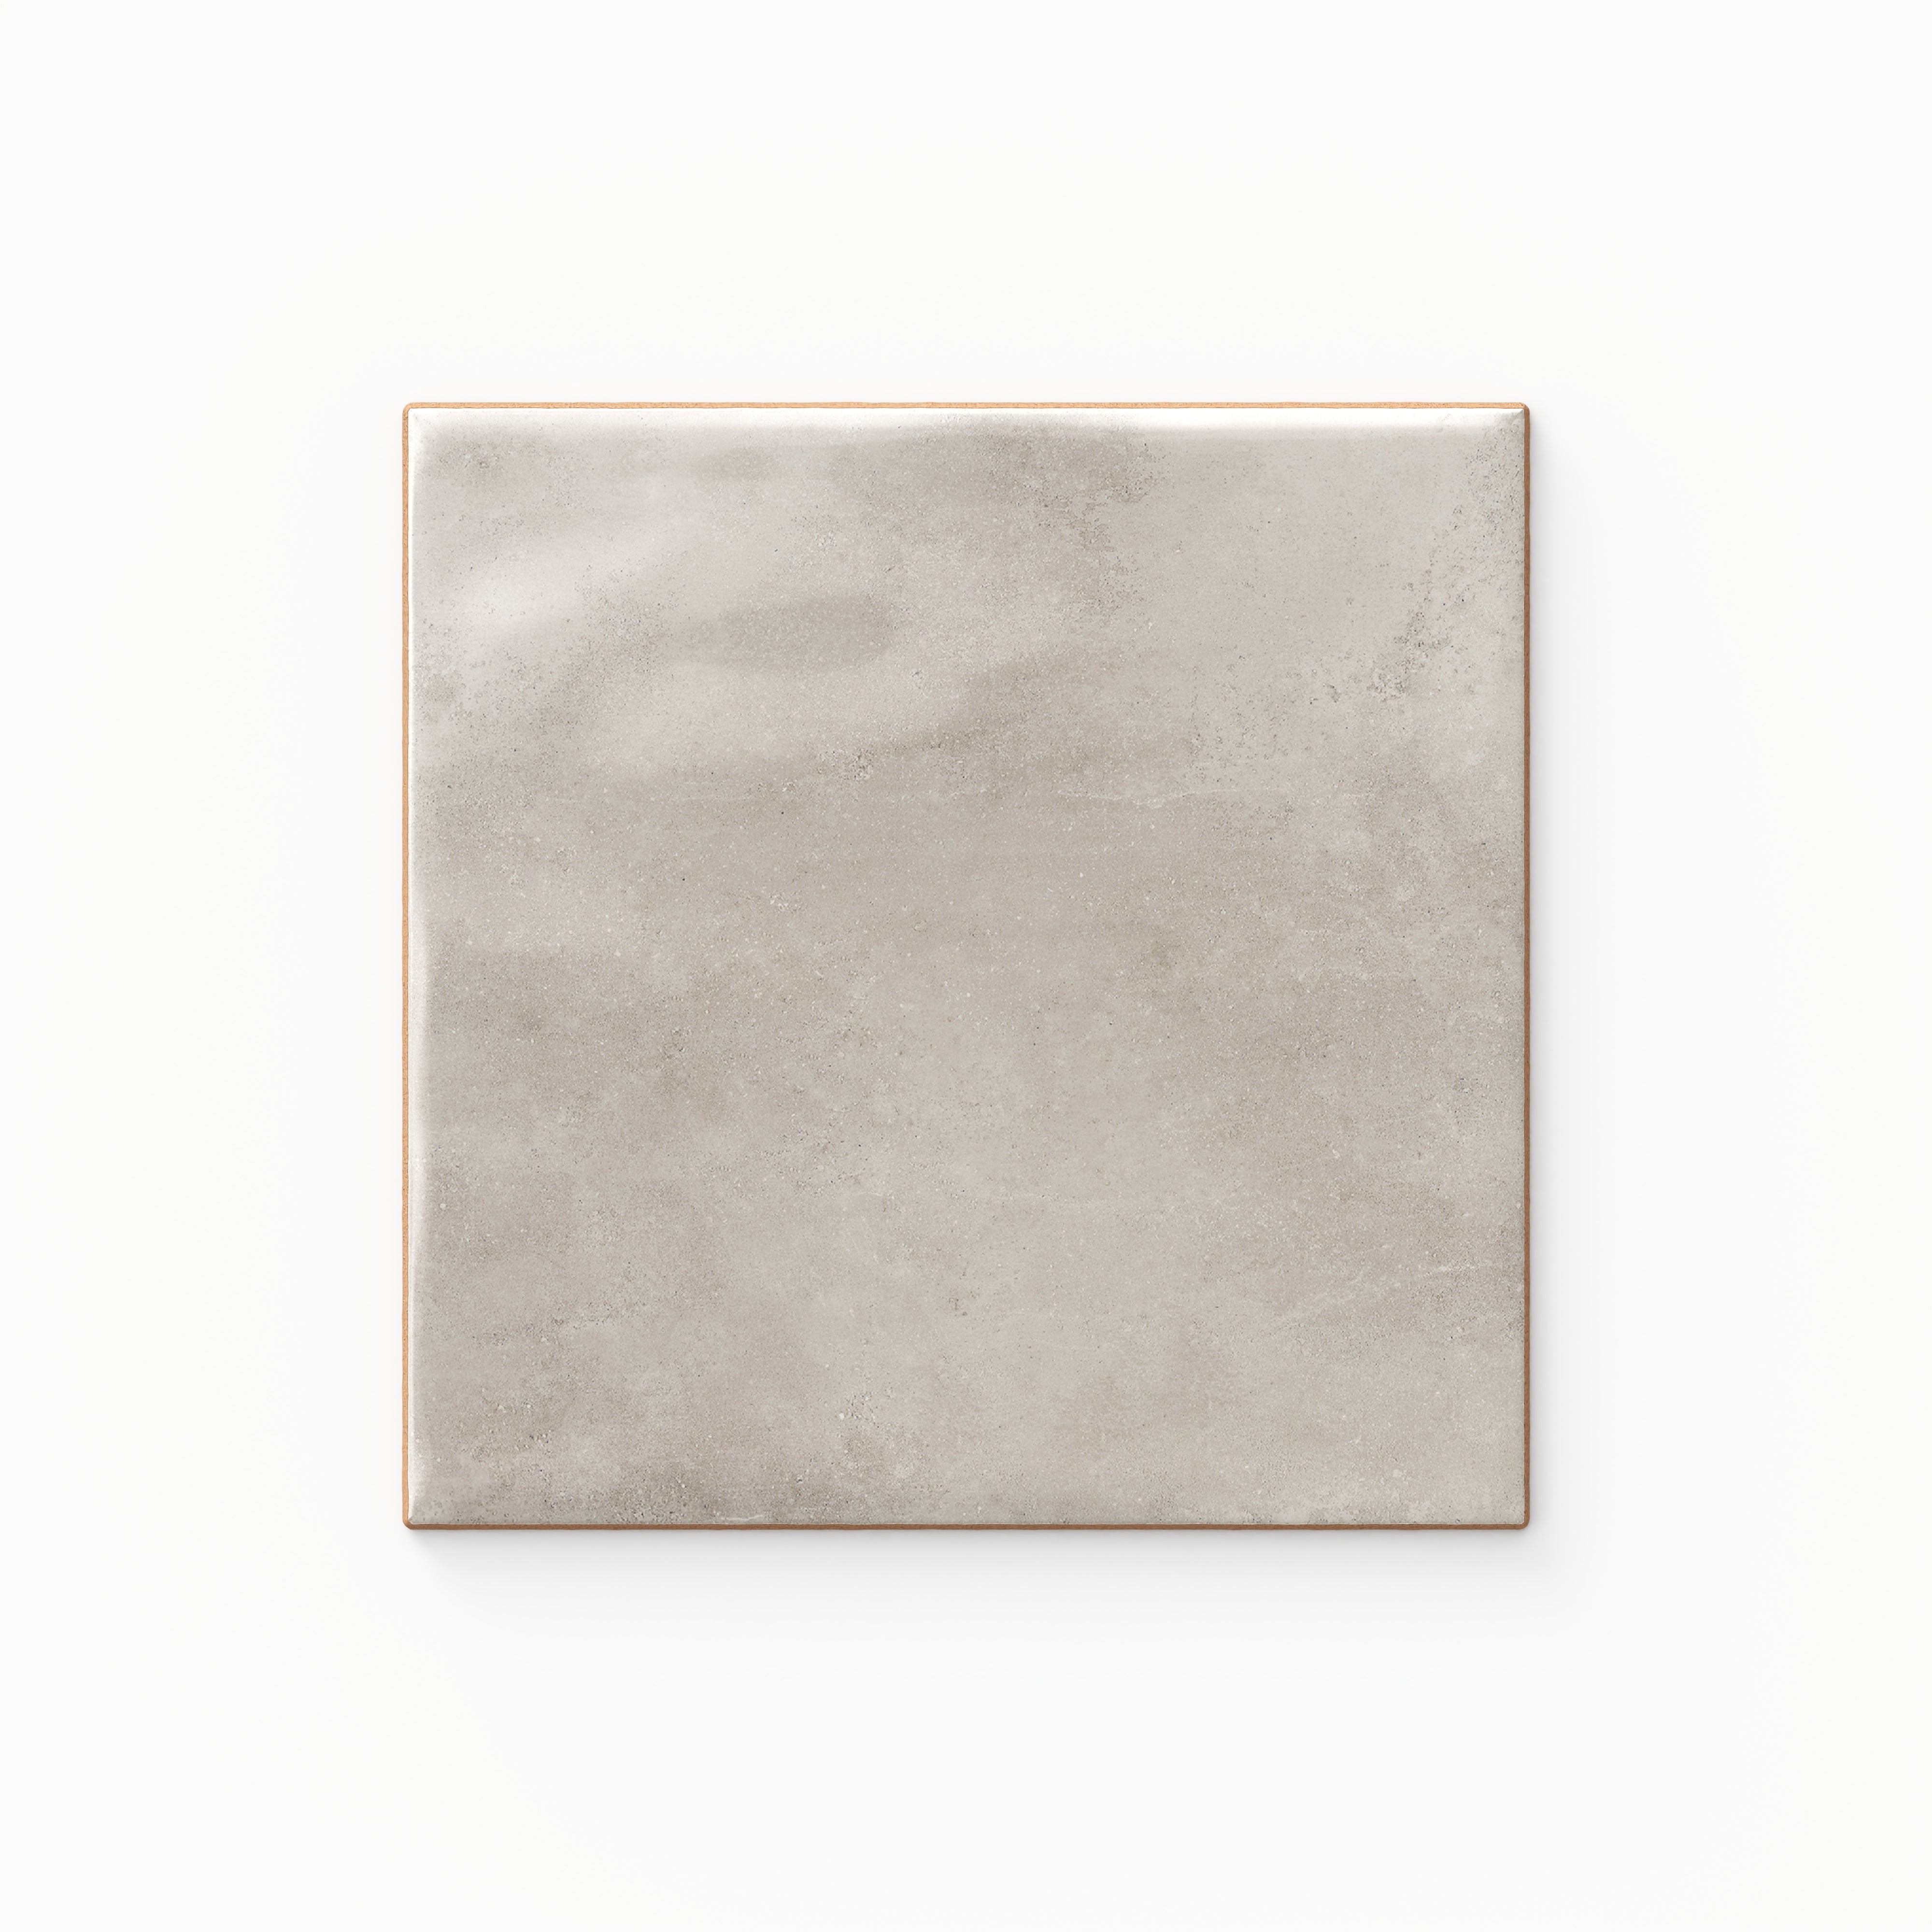 Lilah 6x6 Glossy Ceramic Tile in Mist Sample